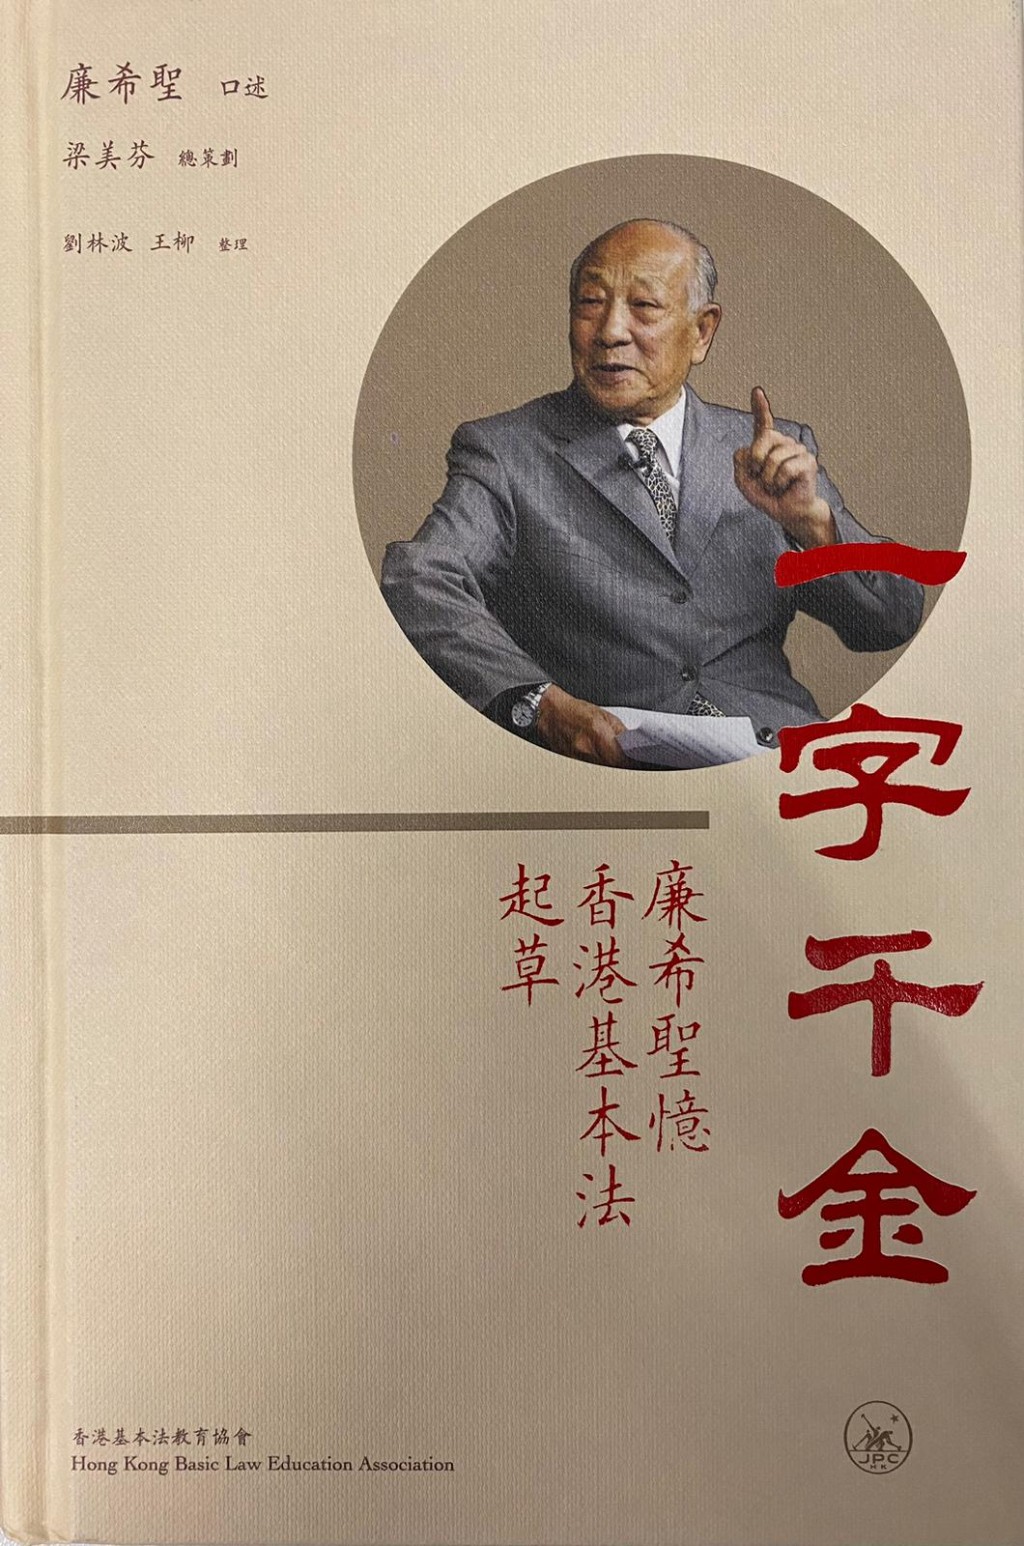 92岁的廉希圣在港推出口述新书《一字千金——廉希圣忆香港基本法起草》。